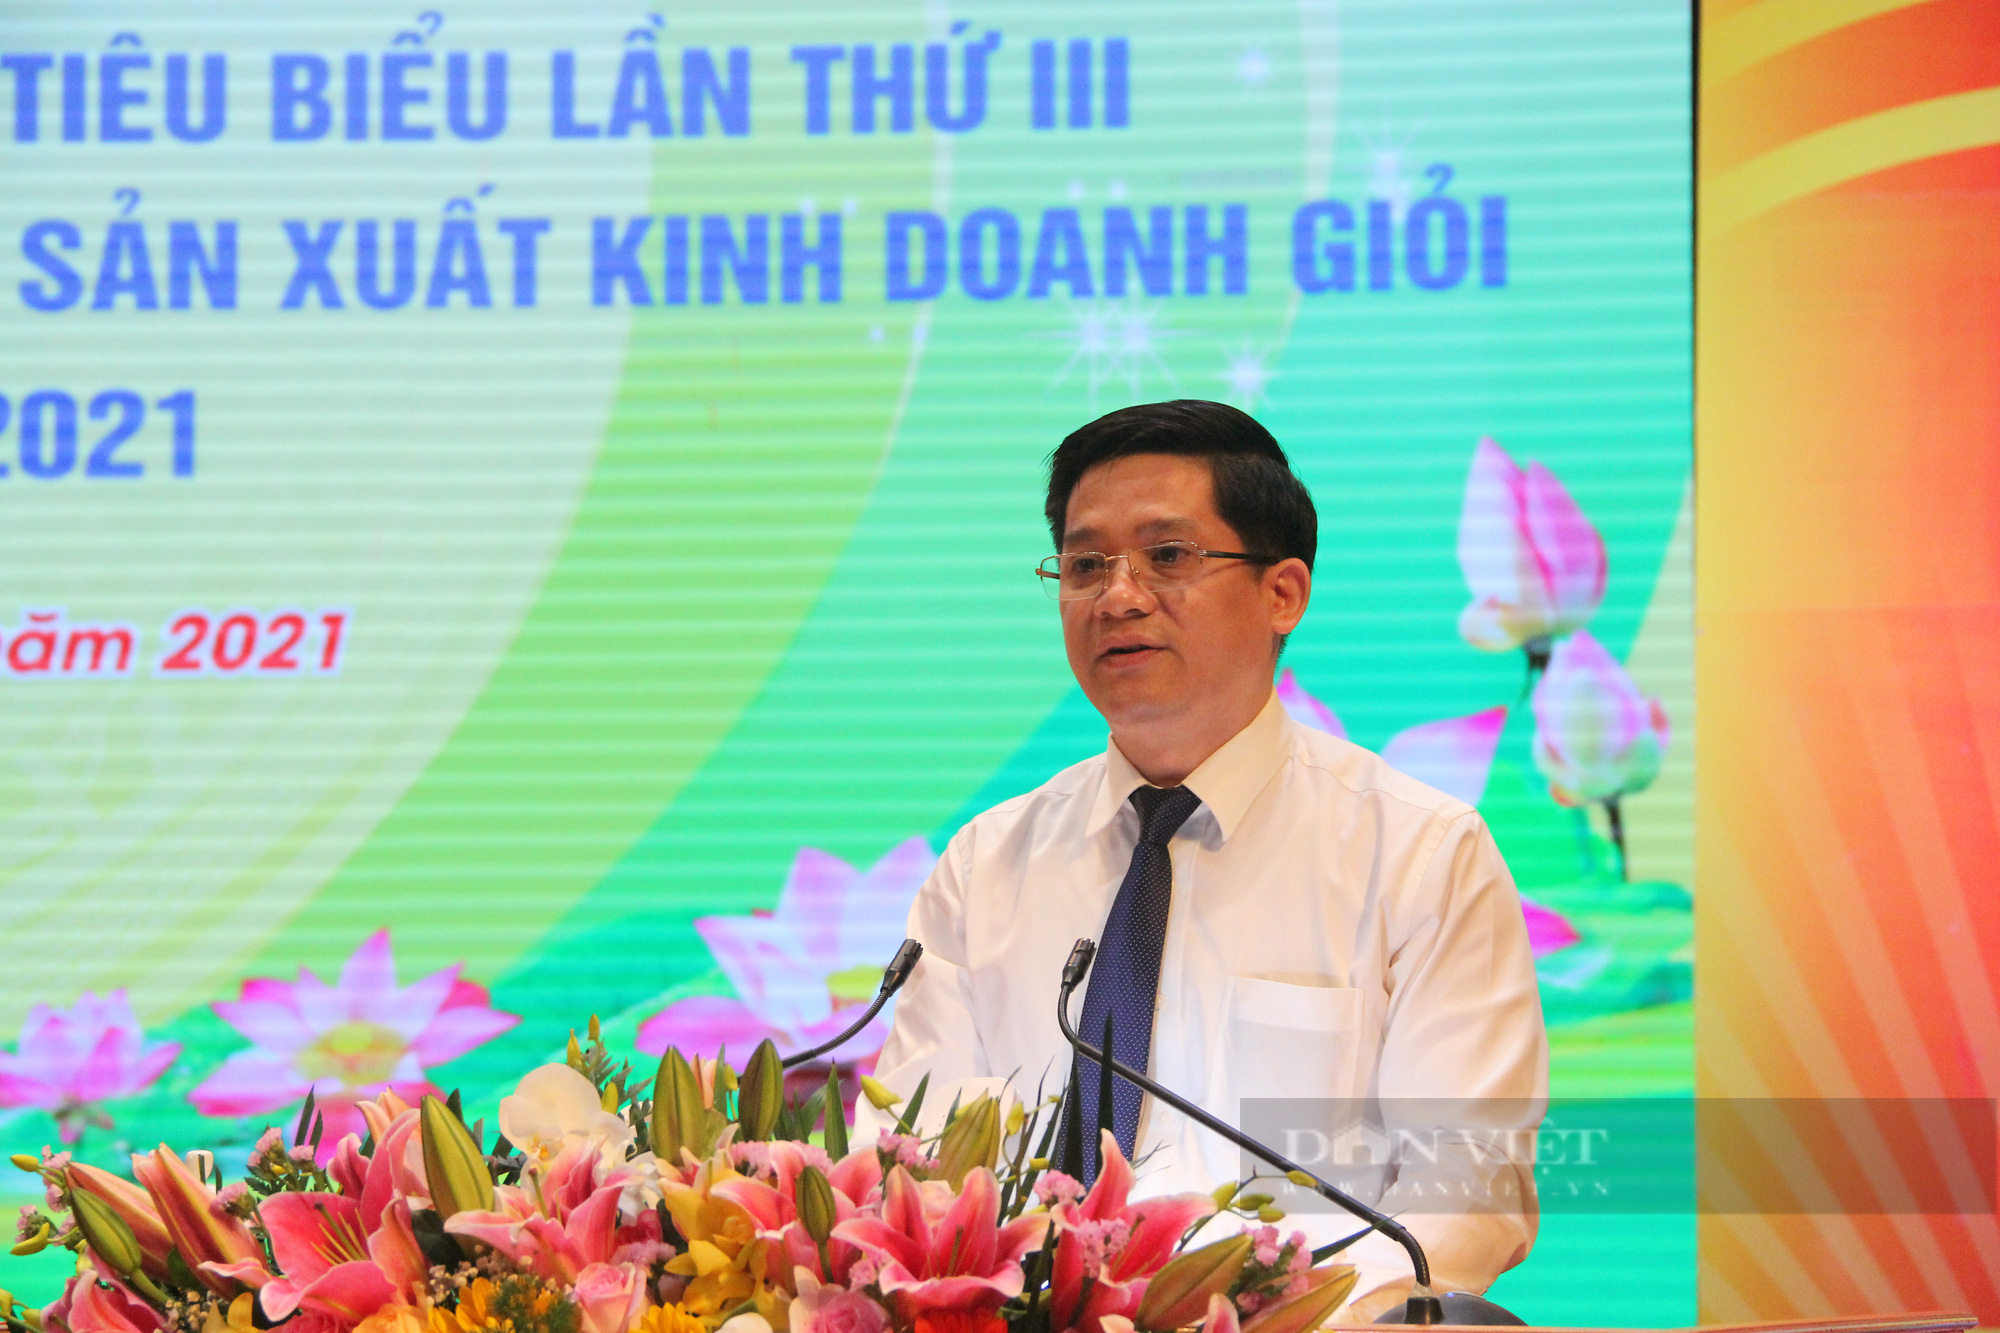 Phó Chủ tịch Hội NDVN Phạm Tiến Nam: Bắc Giang là điểm sáng trong chống dịch,  - Ảnh 1.